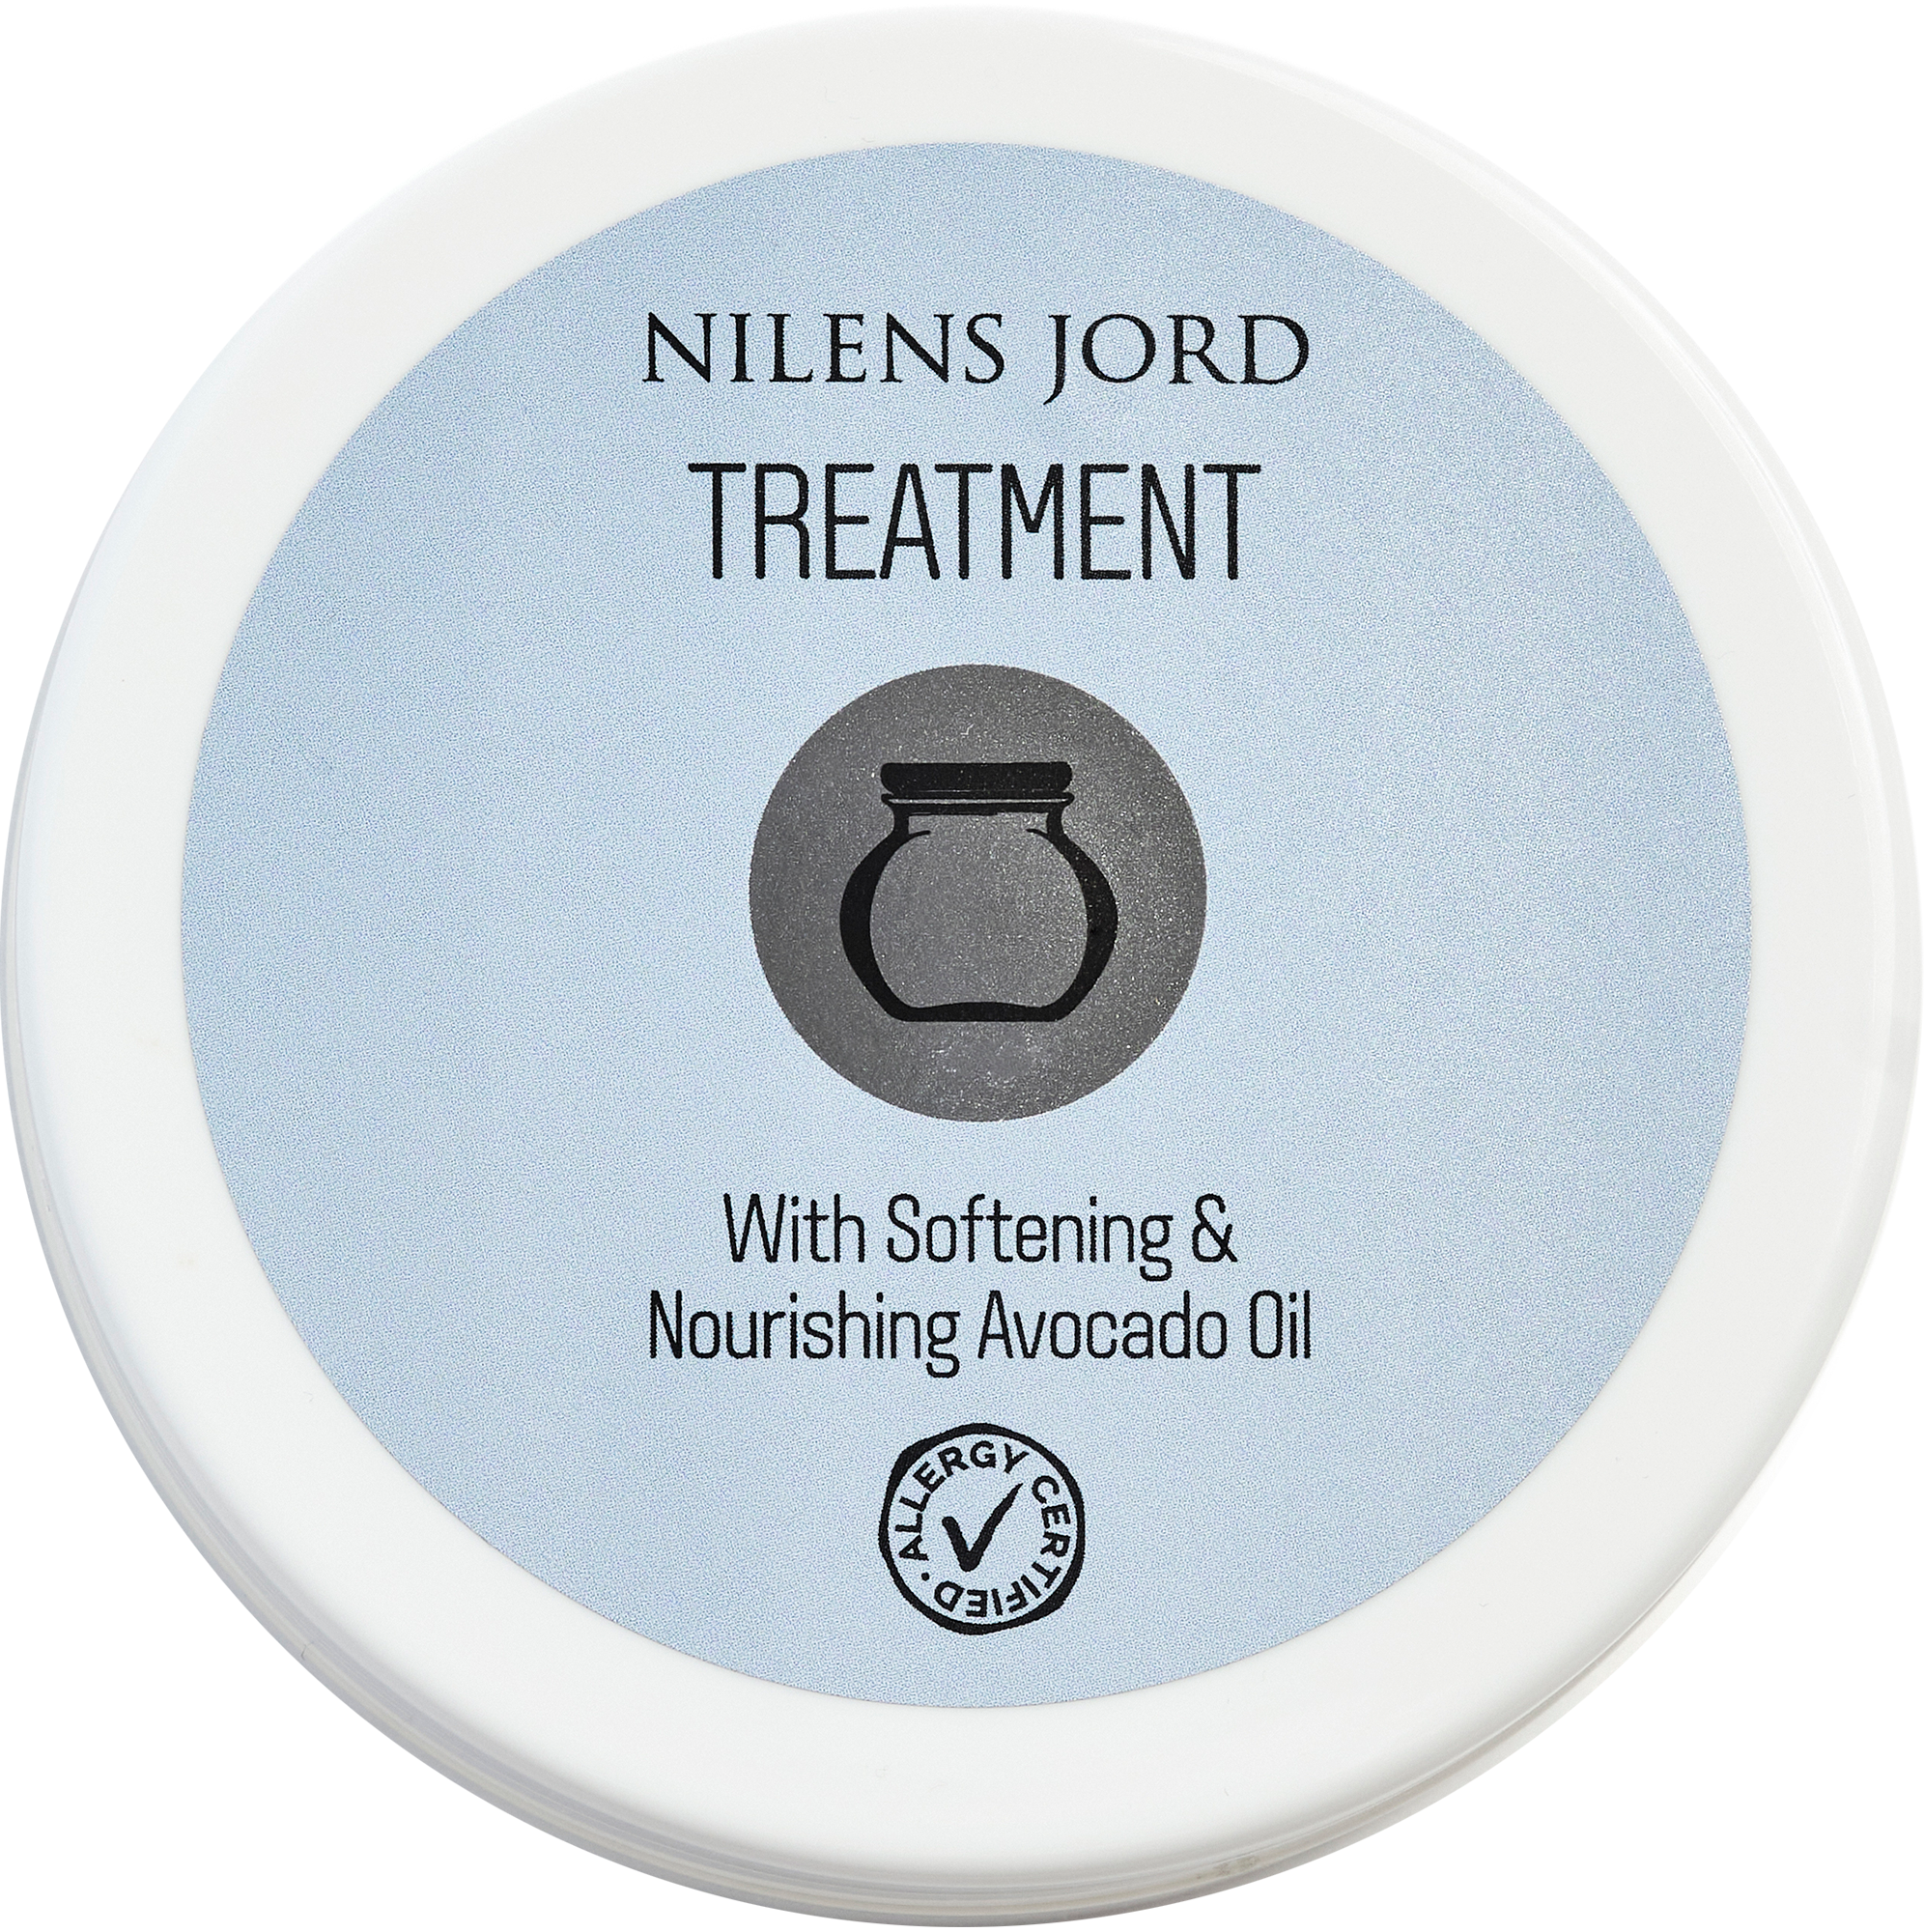 Billede af Nilens Jord Treatment 150 ml. hos Well.dk